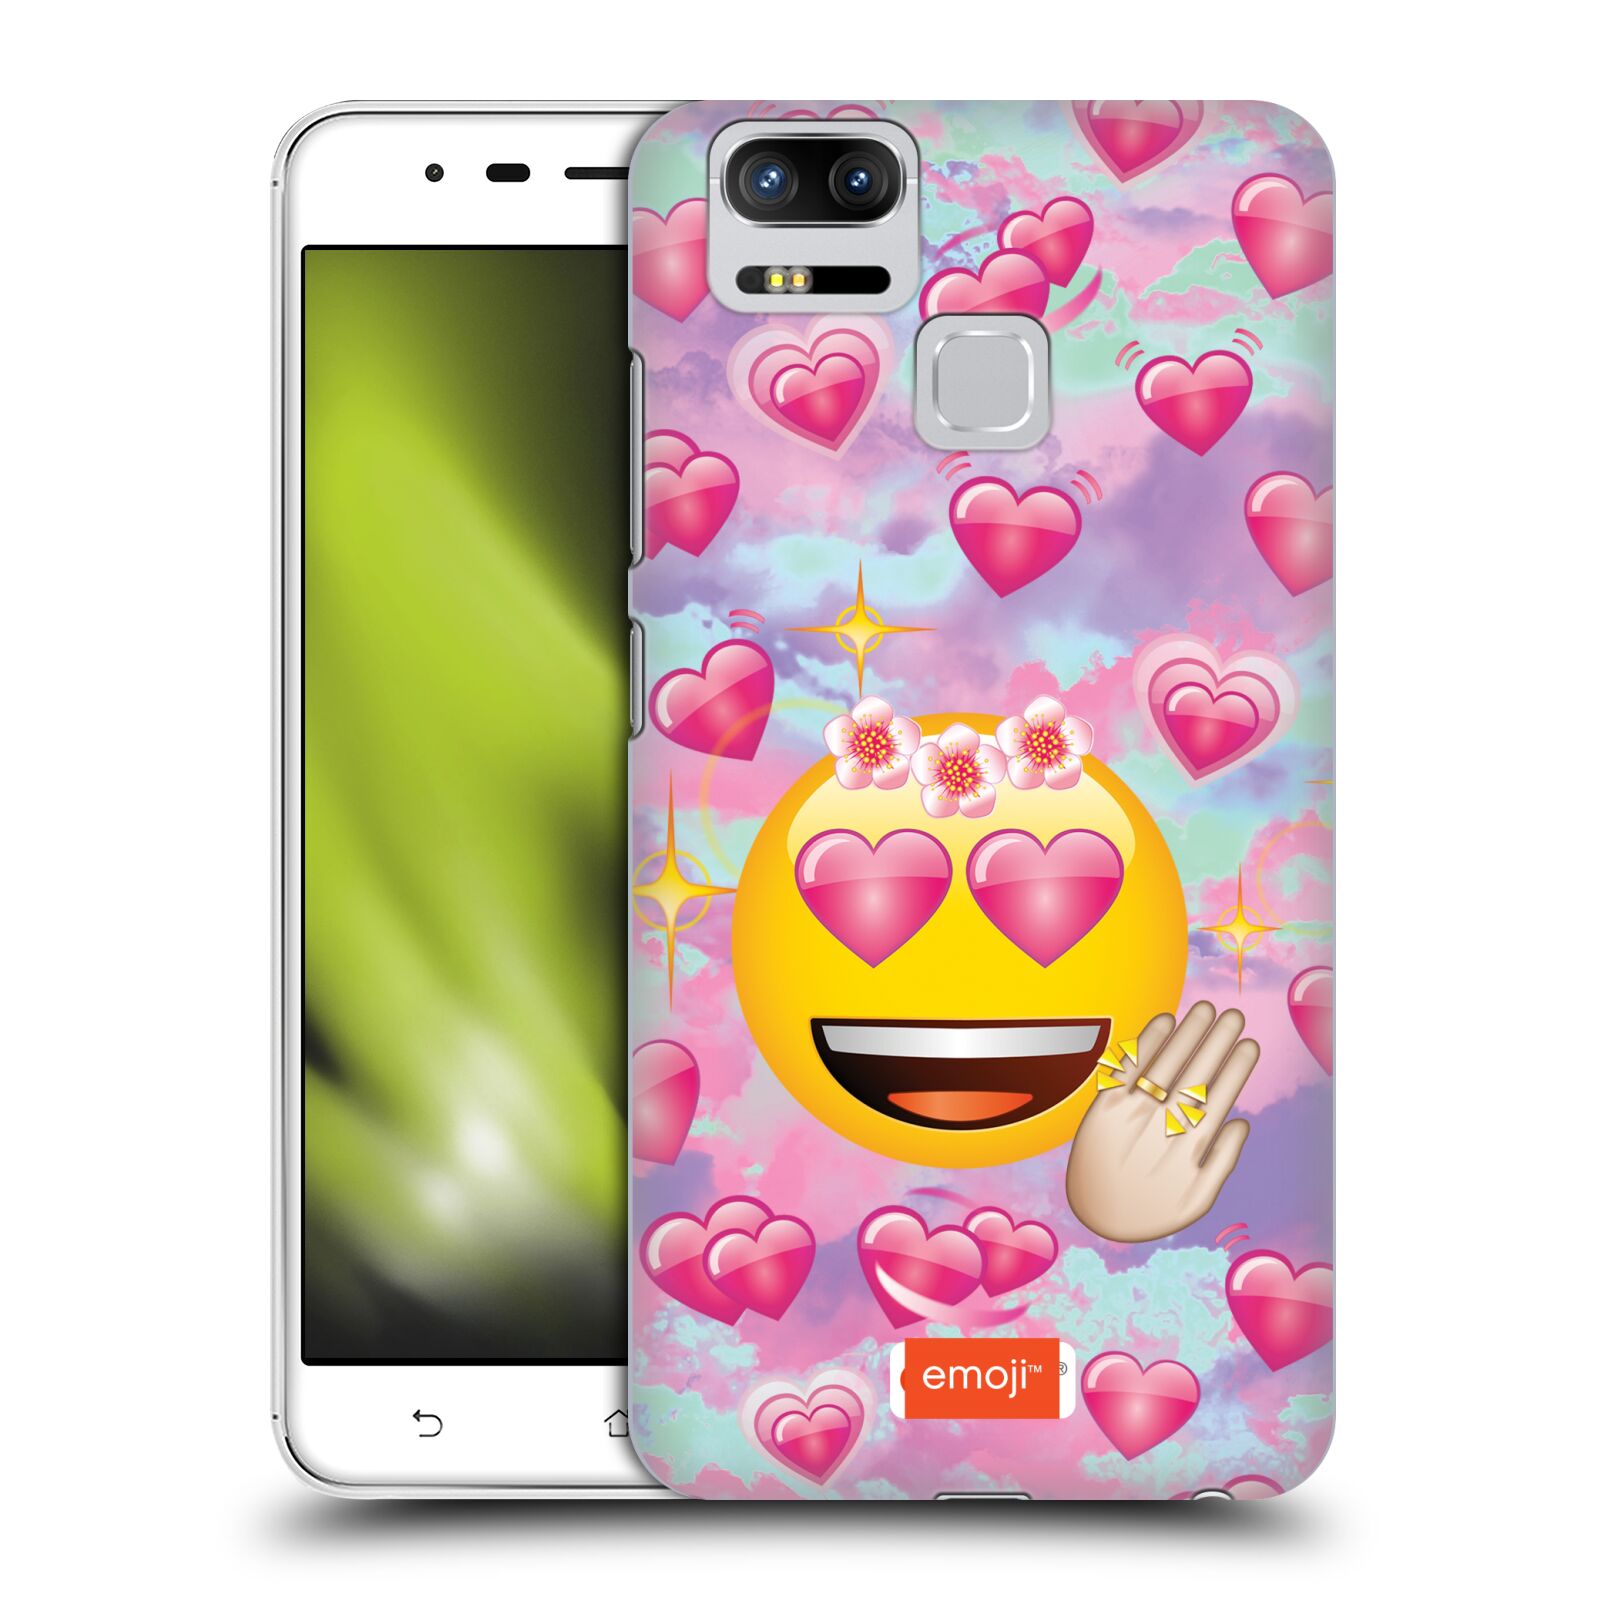 HEAD CASE plastový obal na mobil Asus Zenfone 3 Zoom ZE553KL smajlík oficiální kryt EMOJI velký smajlík růžová srdíčka